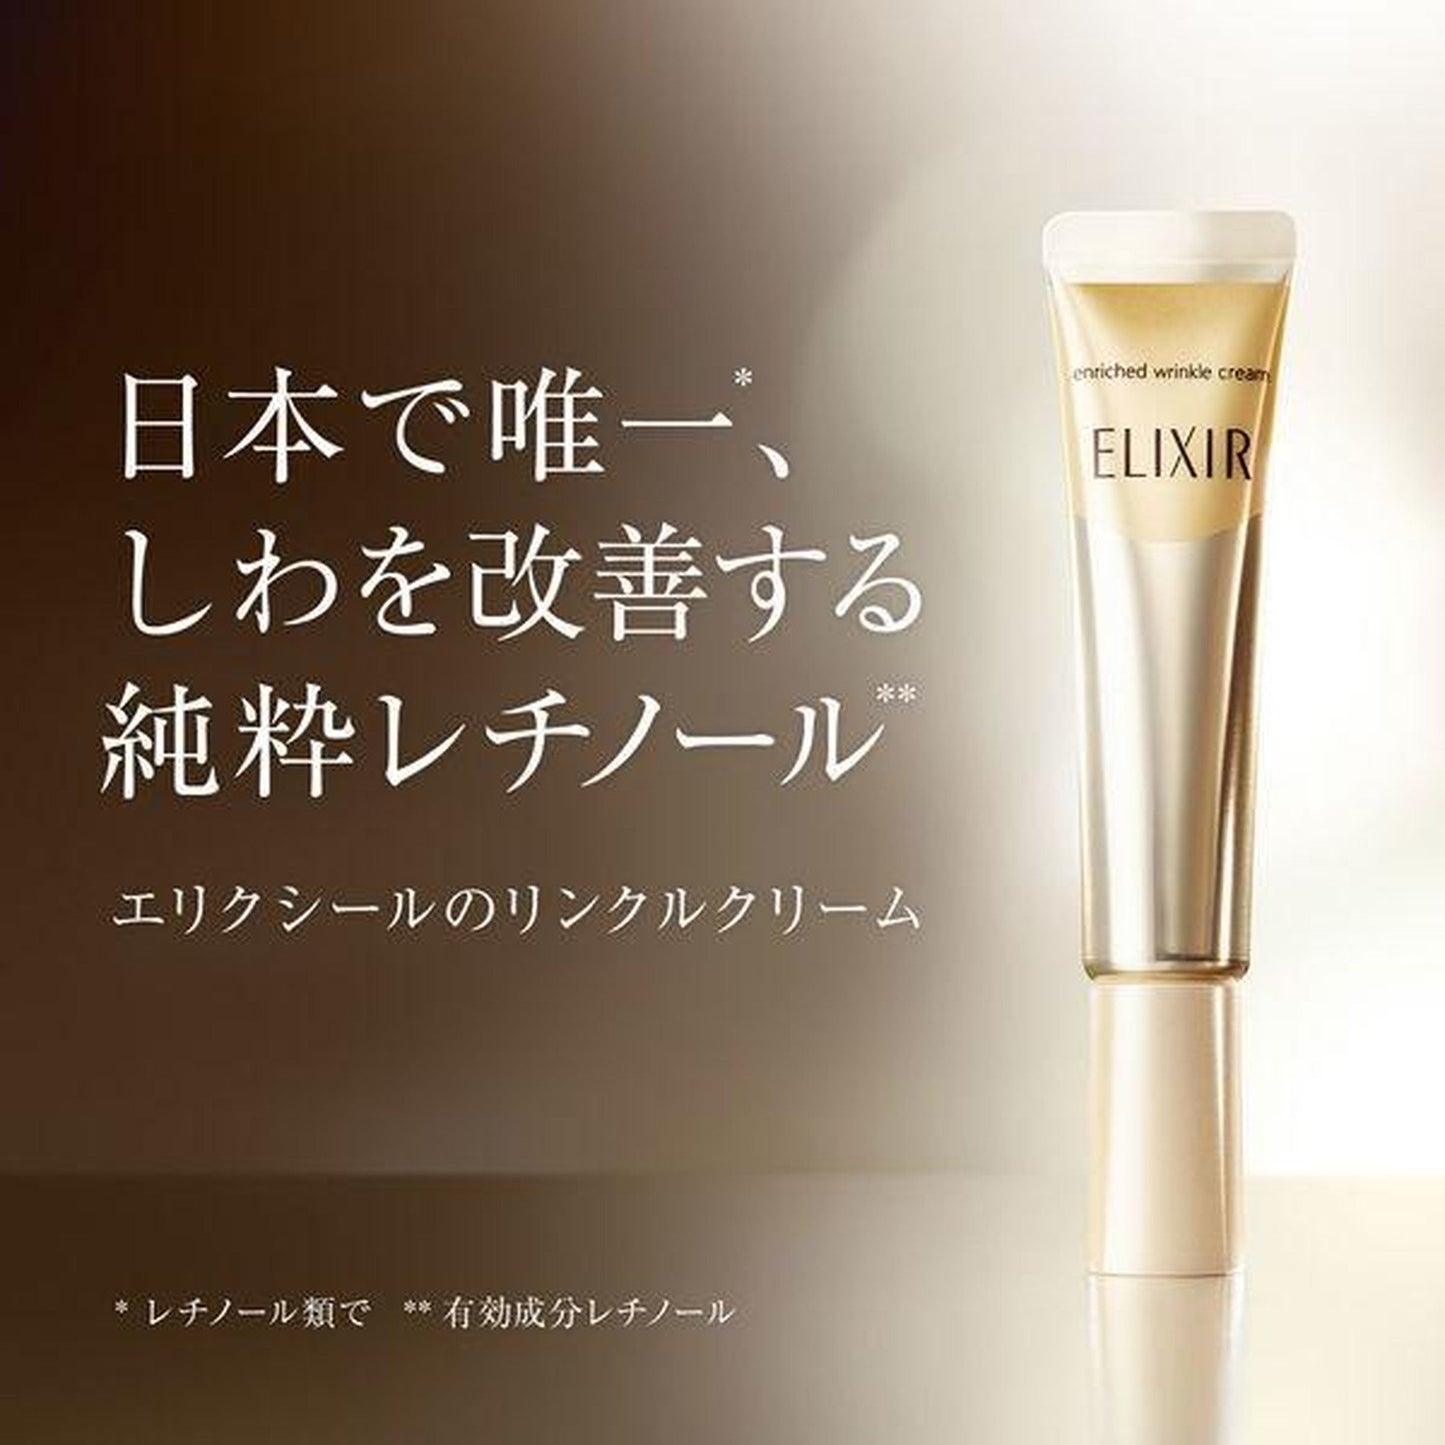 Shiseido Elixir Superieur Enriched Wrinkle Cream L 22g